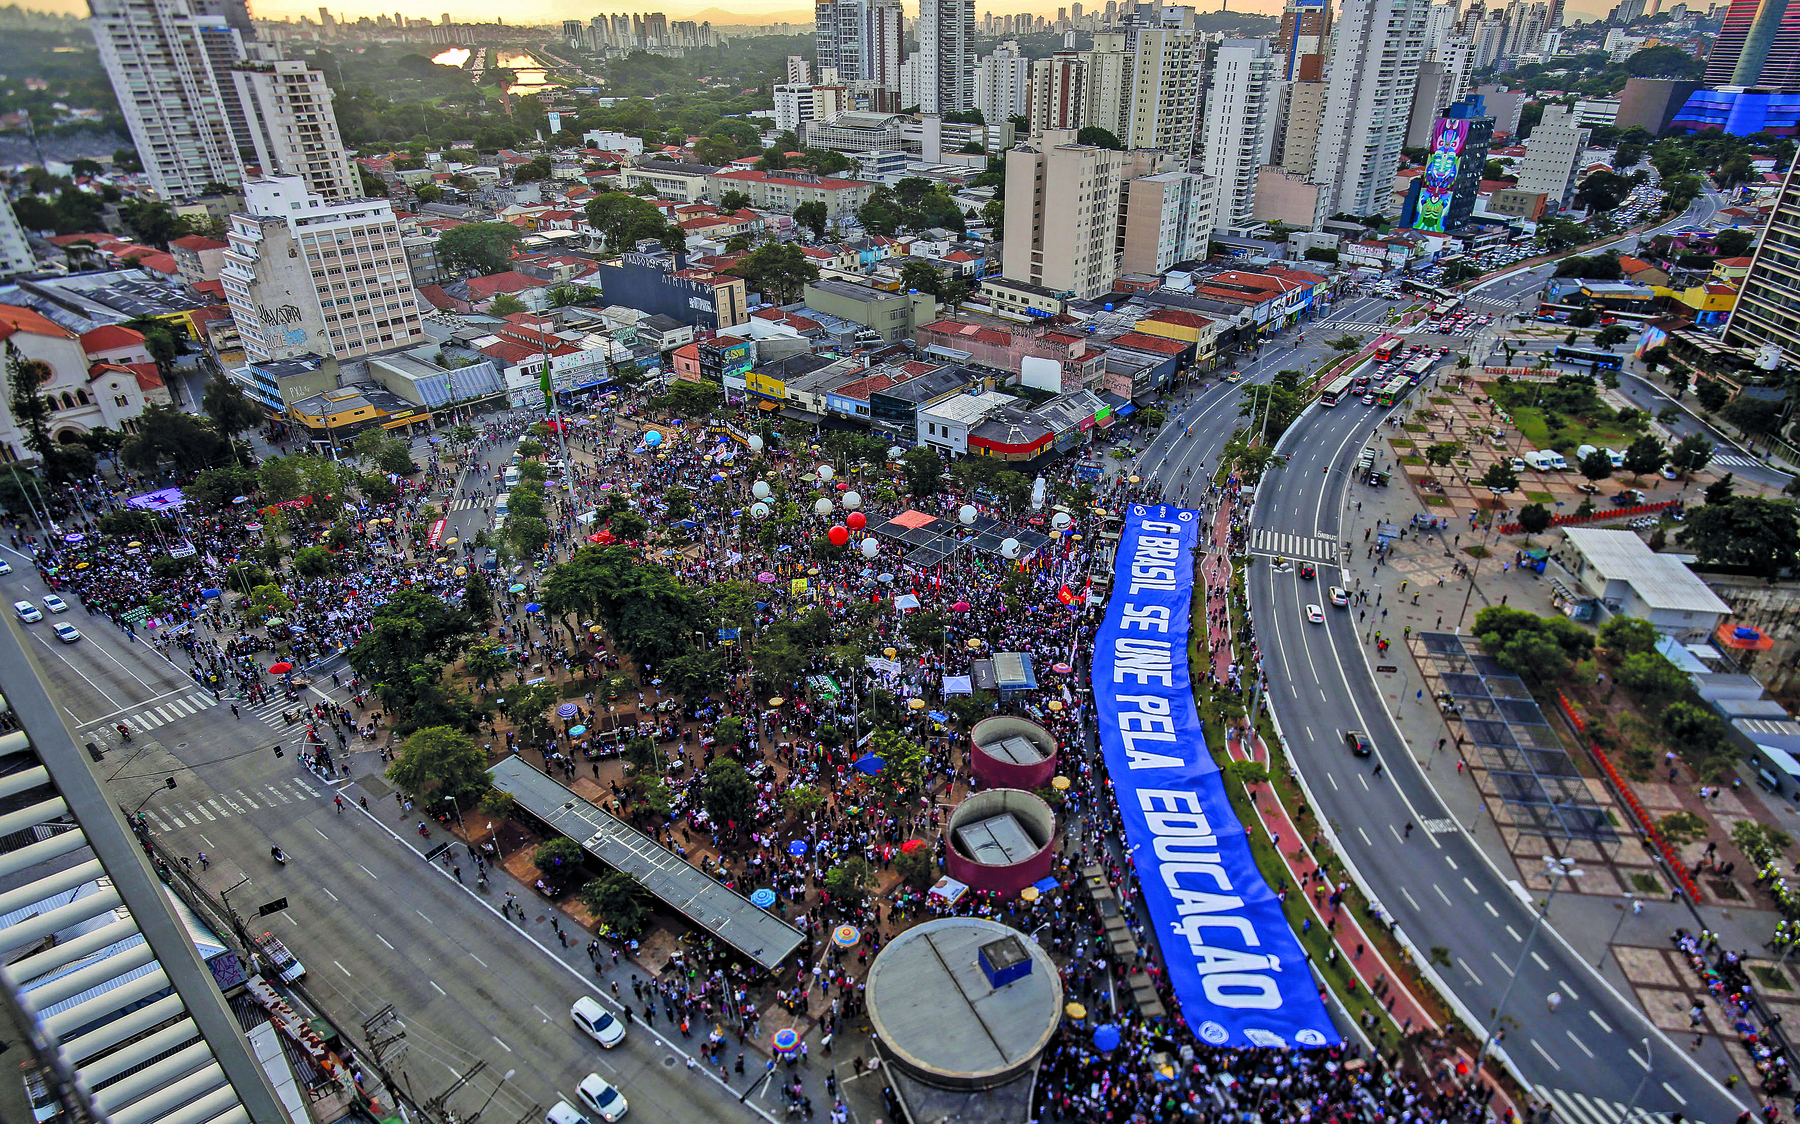 Fotografia. Vista aérea de uma área urbana contendo uma manifestação de pessoas cercadas por avenidas e edifícios. Há uma longa faixa azul estendida sobre os manifestantes, com o texto: 'O Brasil se une pela Educação'.